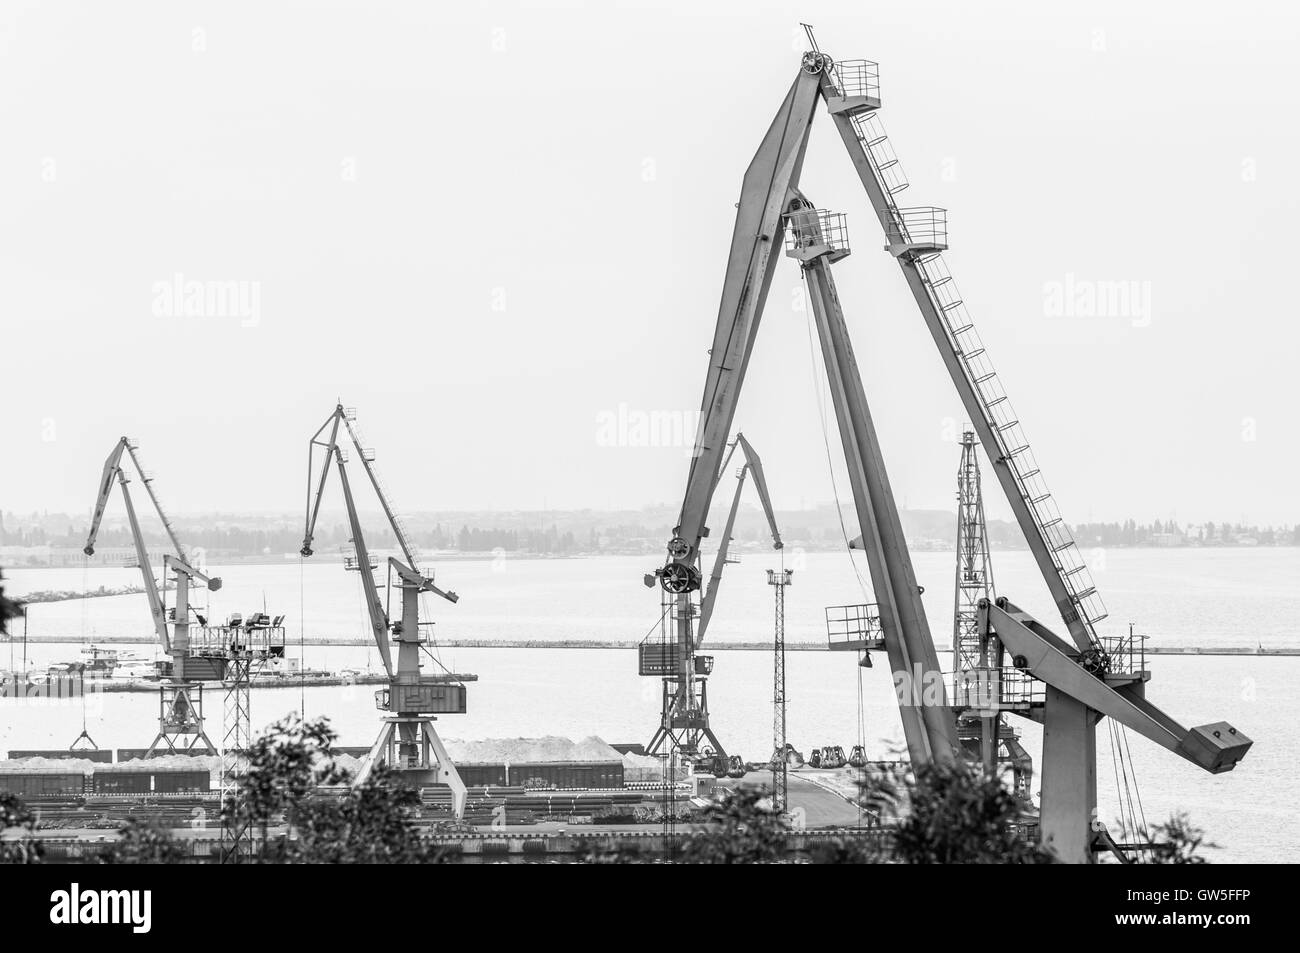 Dockyard Kräne im Hafen von Odessa Marine Handel. Schwarz / weiß Foto. Odessa, Ukraine - 22. August 2016. Stockfoto